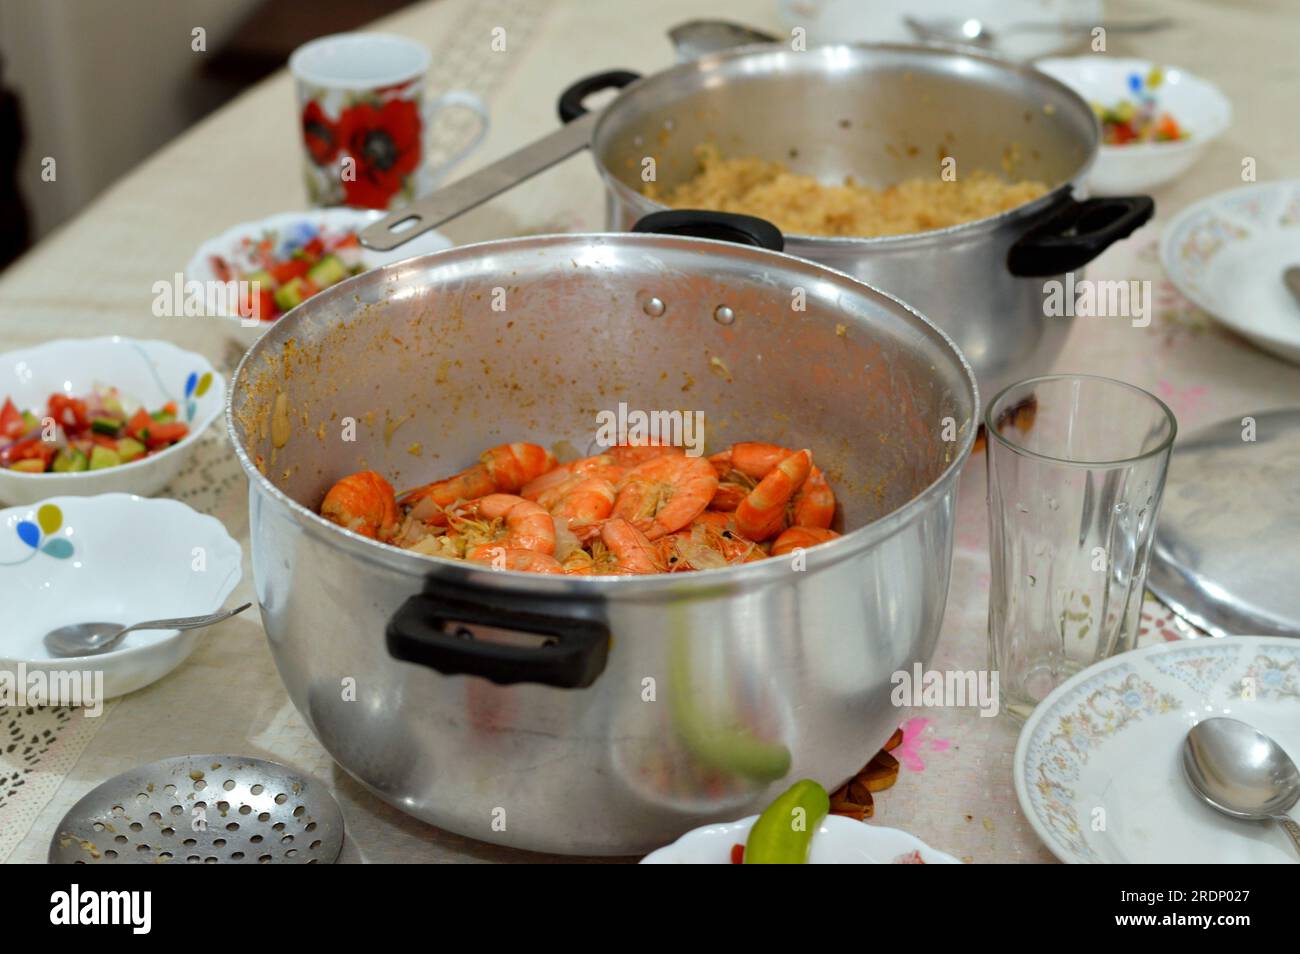 Esstisch mit ägyptischem Reis, gekocht auf heißem Dampf und Garnelen mit Kreuzkümmel, Zitrone und Zwiebel, einem Krebstier (eine Form von Schalentieren) mit einer verlängerten Stockfoto